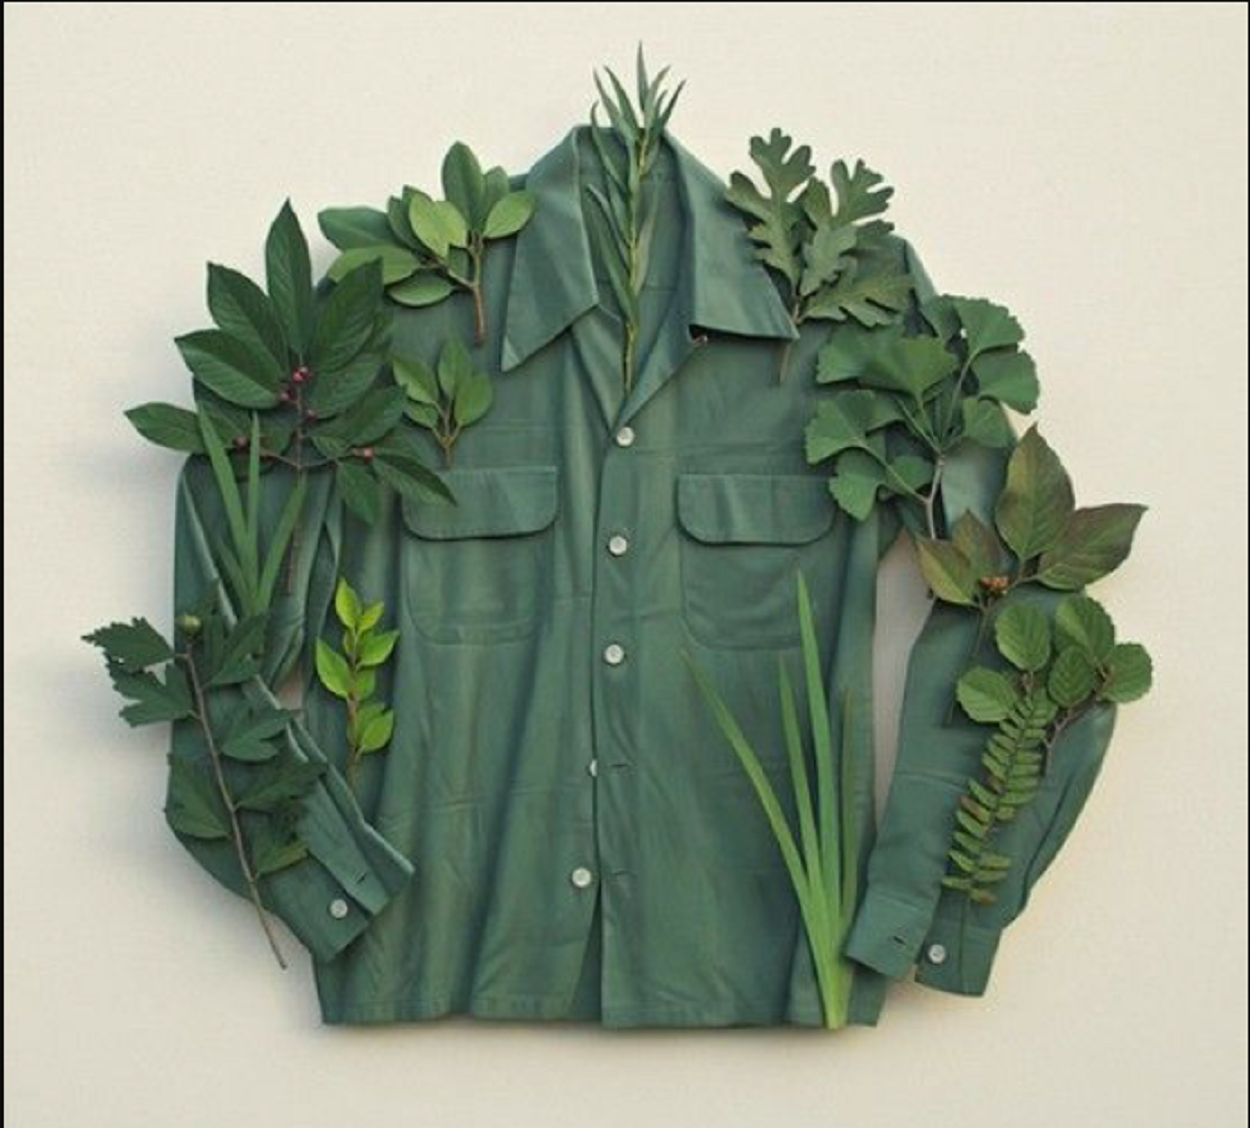 camisa social verde com folhagem ao redor enfeitando